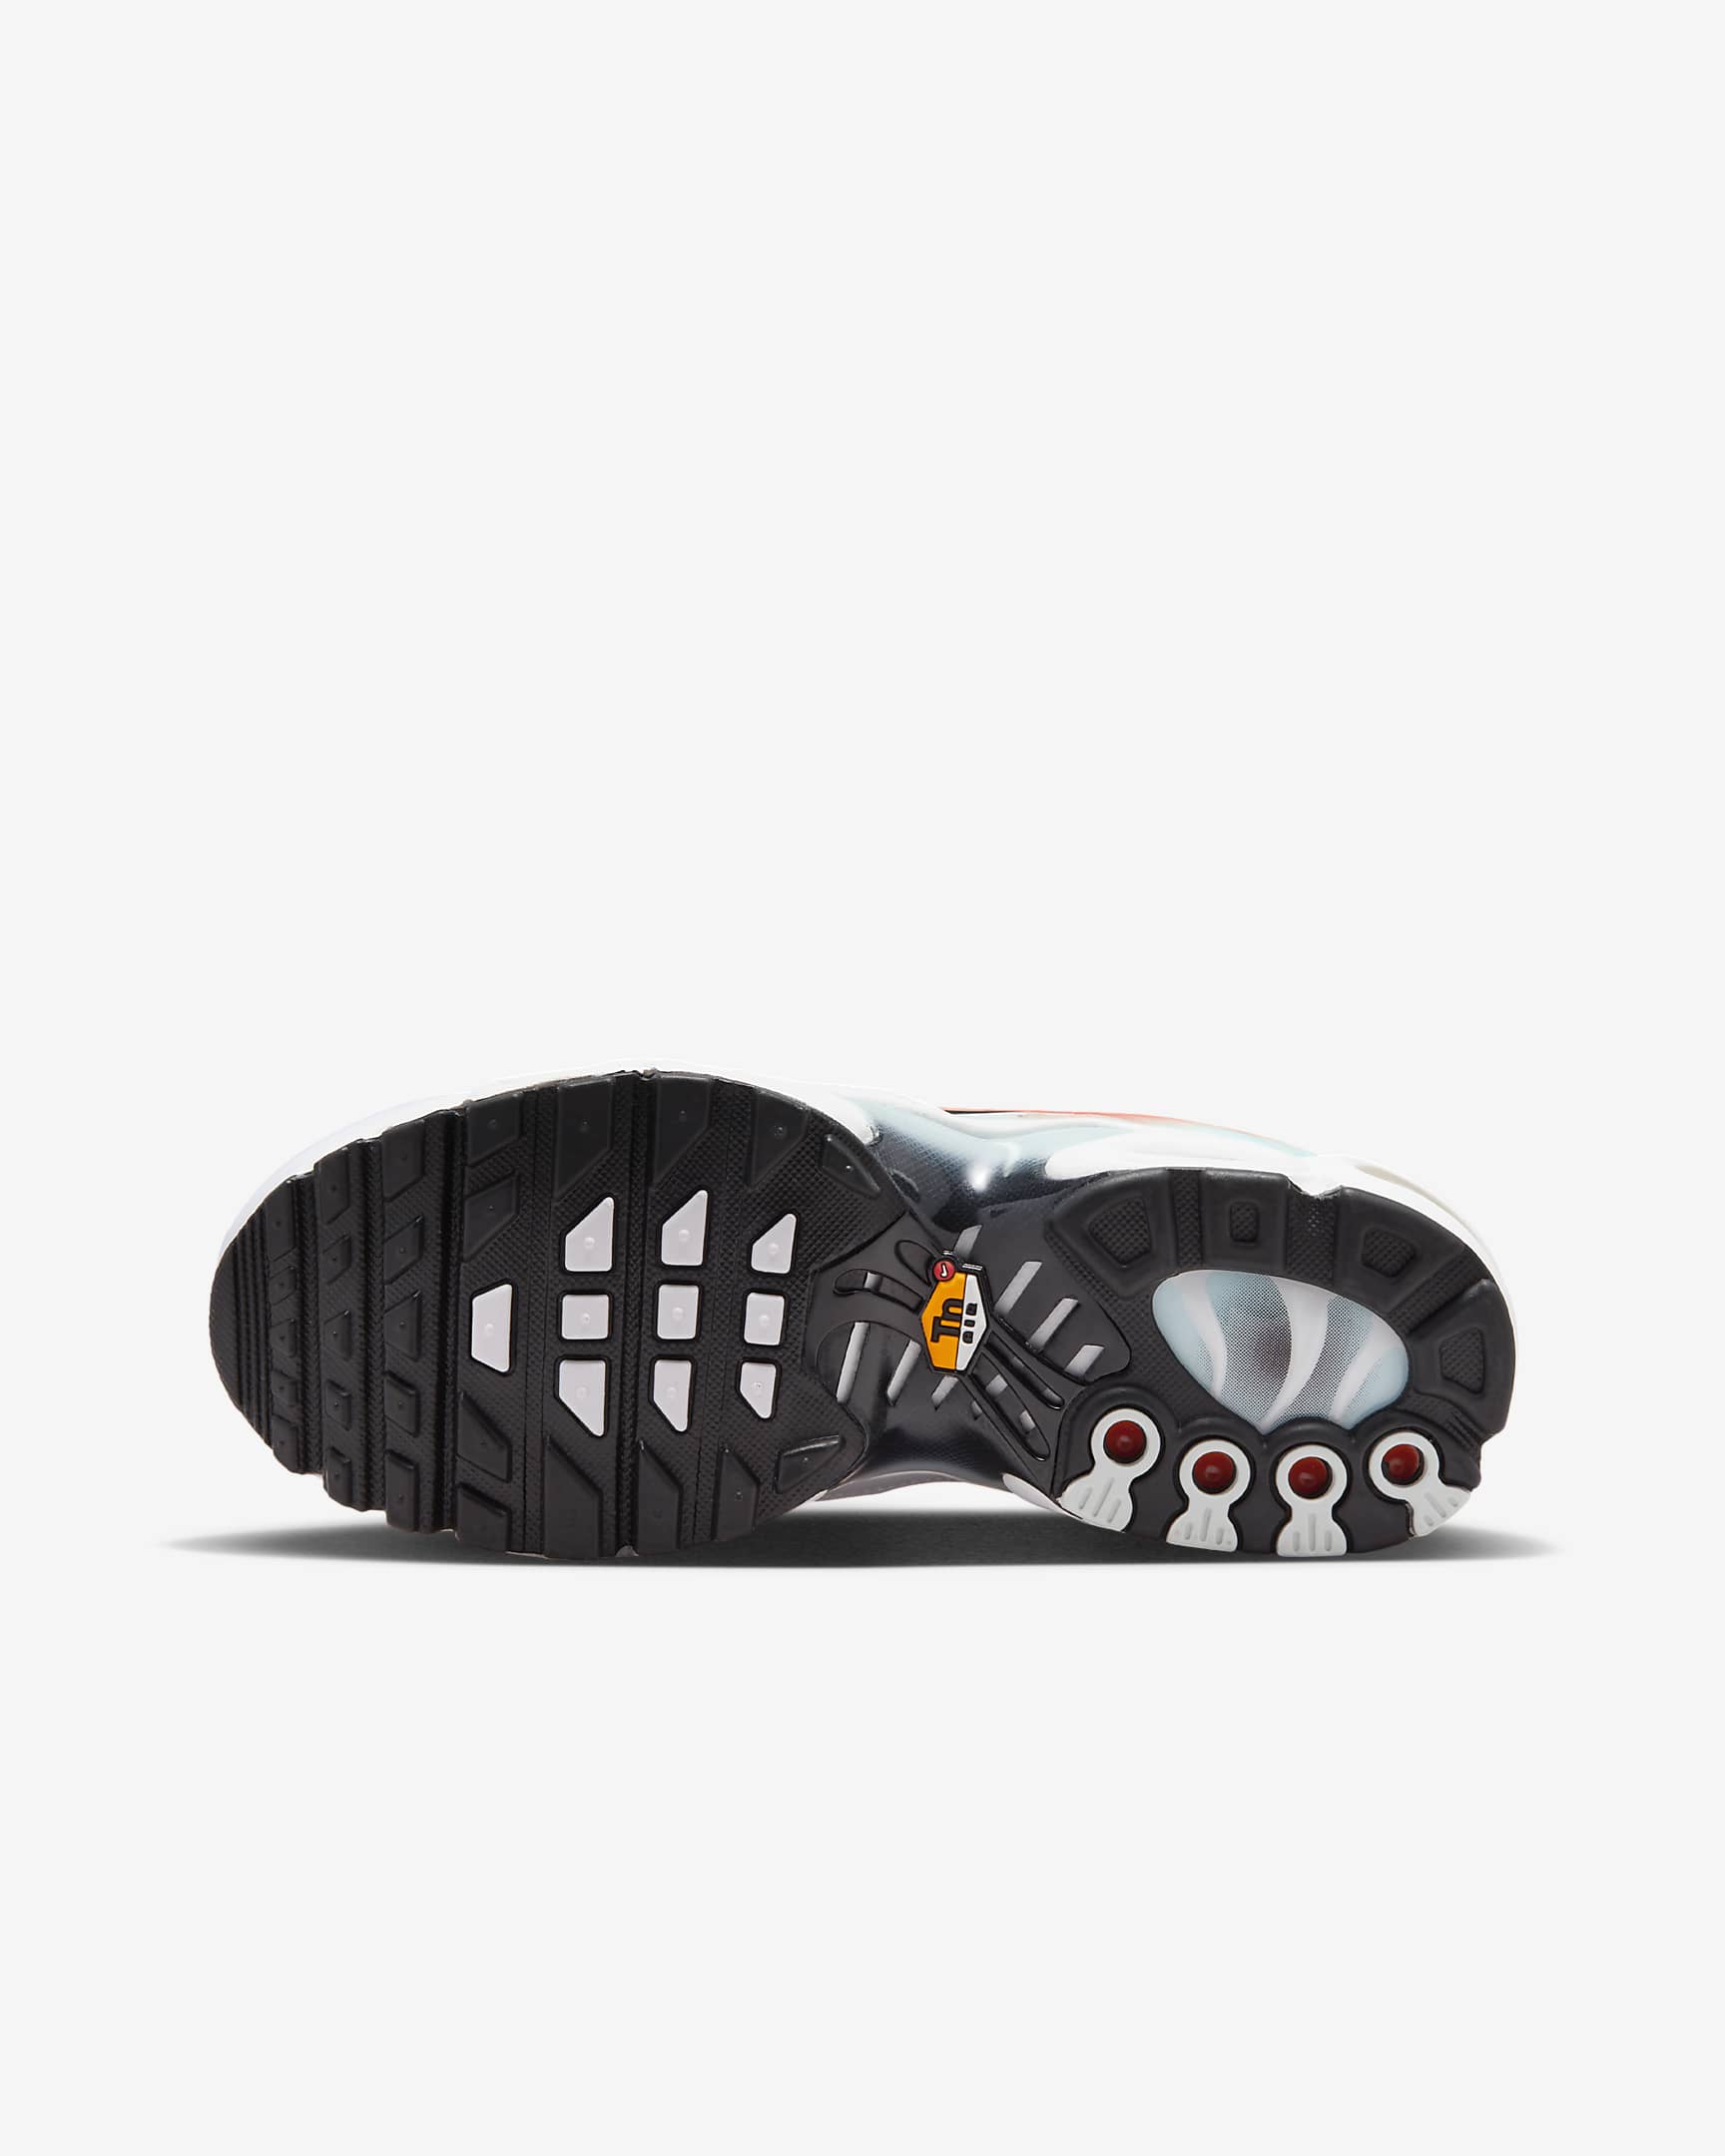 Nike Air Max Plus Schuh für ältere Kinder - Weiß/Cosmic Clay/Lightning/Schwarz